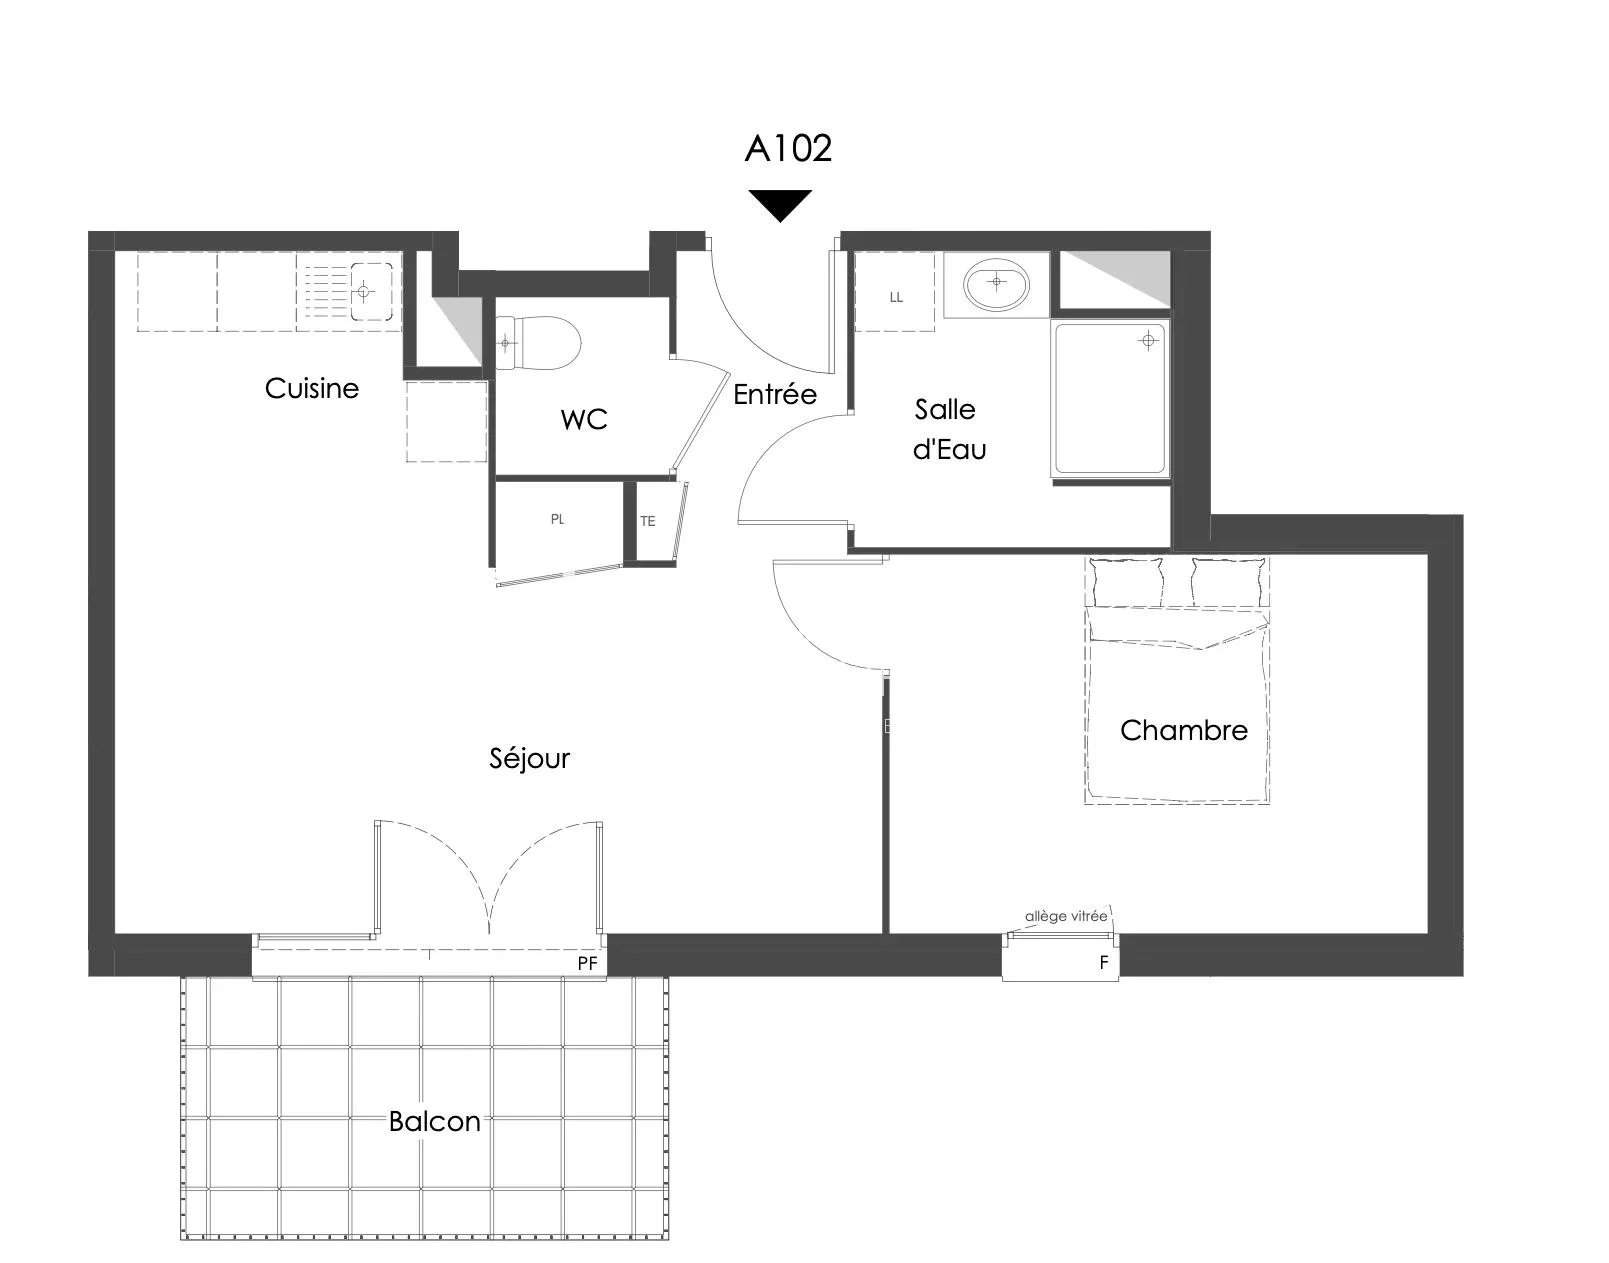 Vente de appartement d'une surface de 44.5 m2